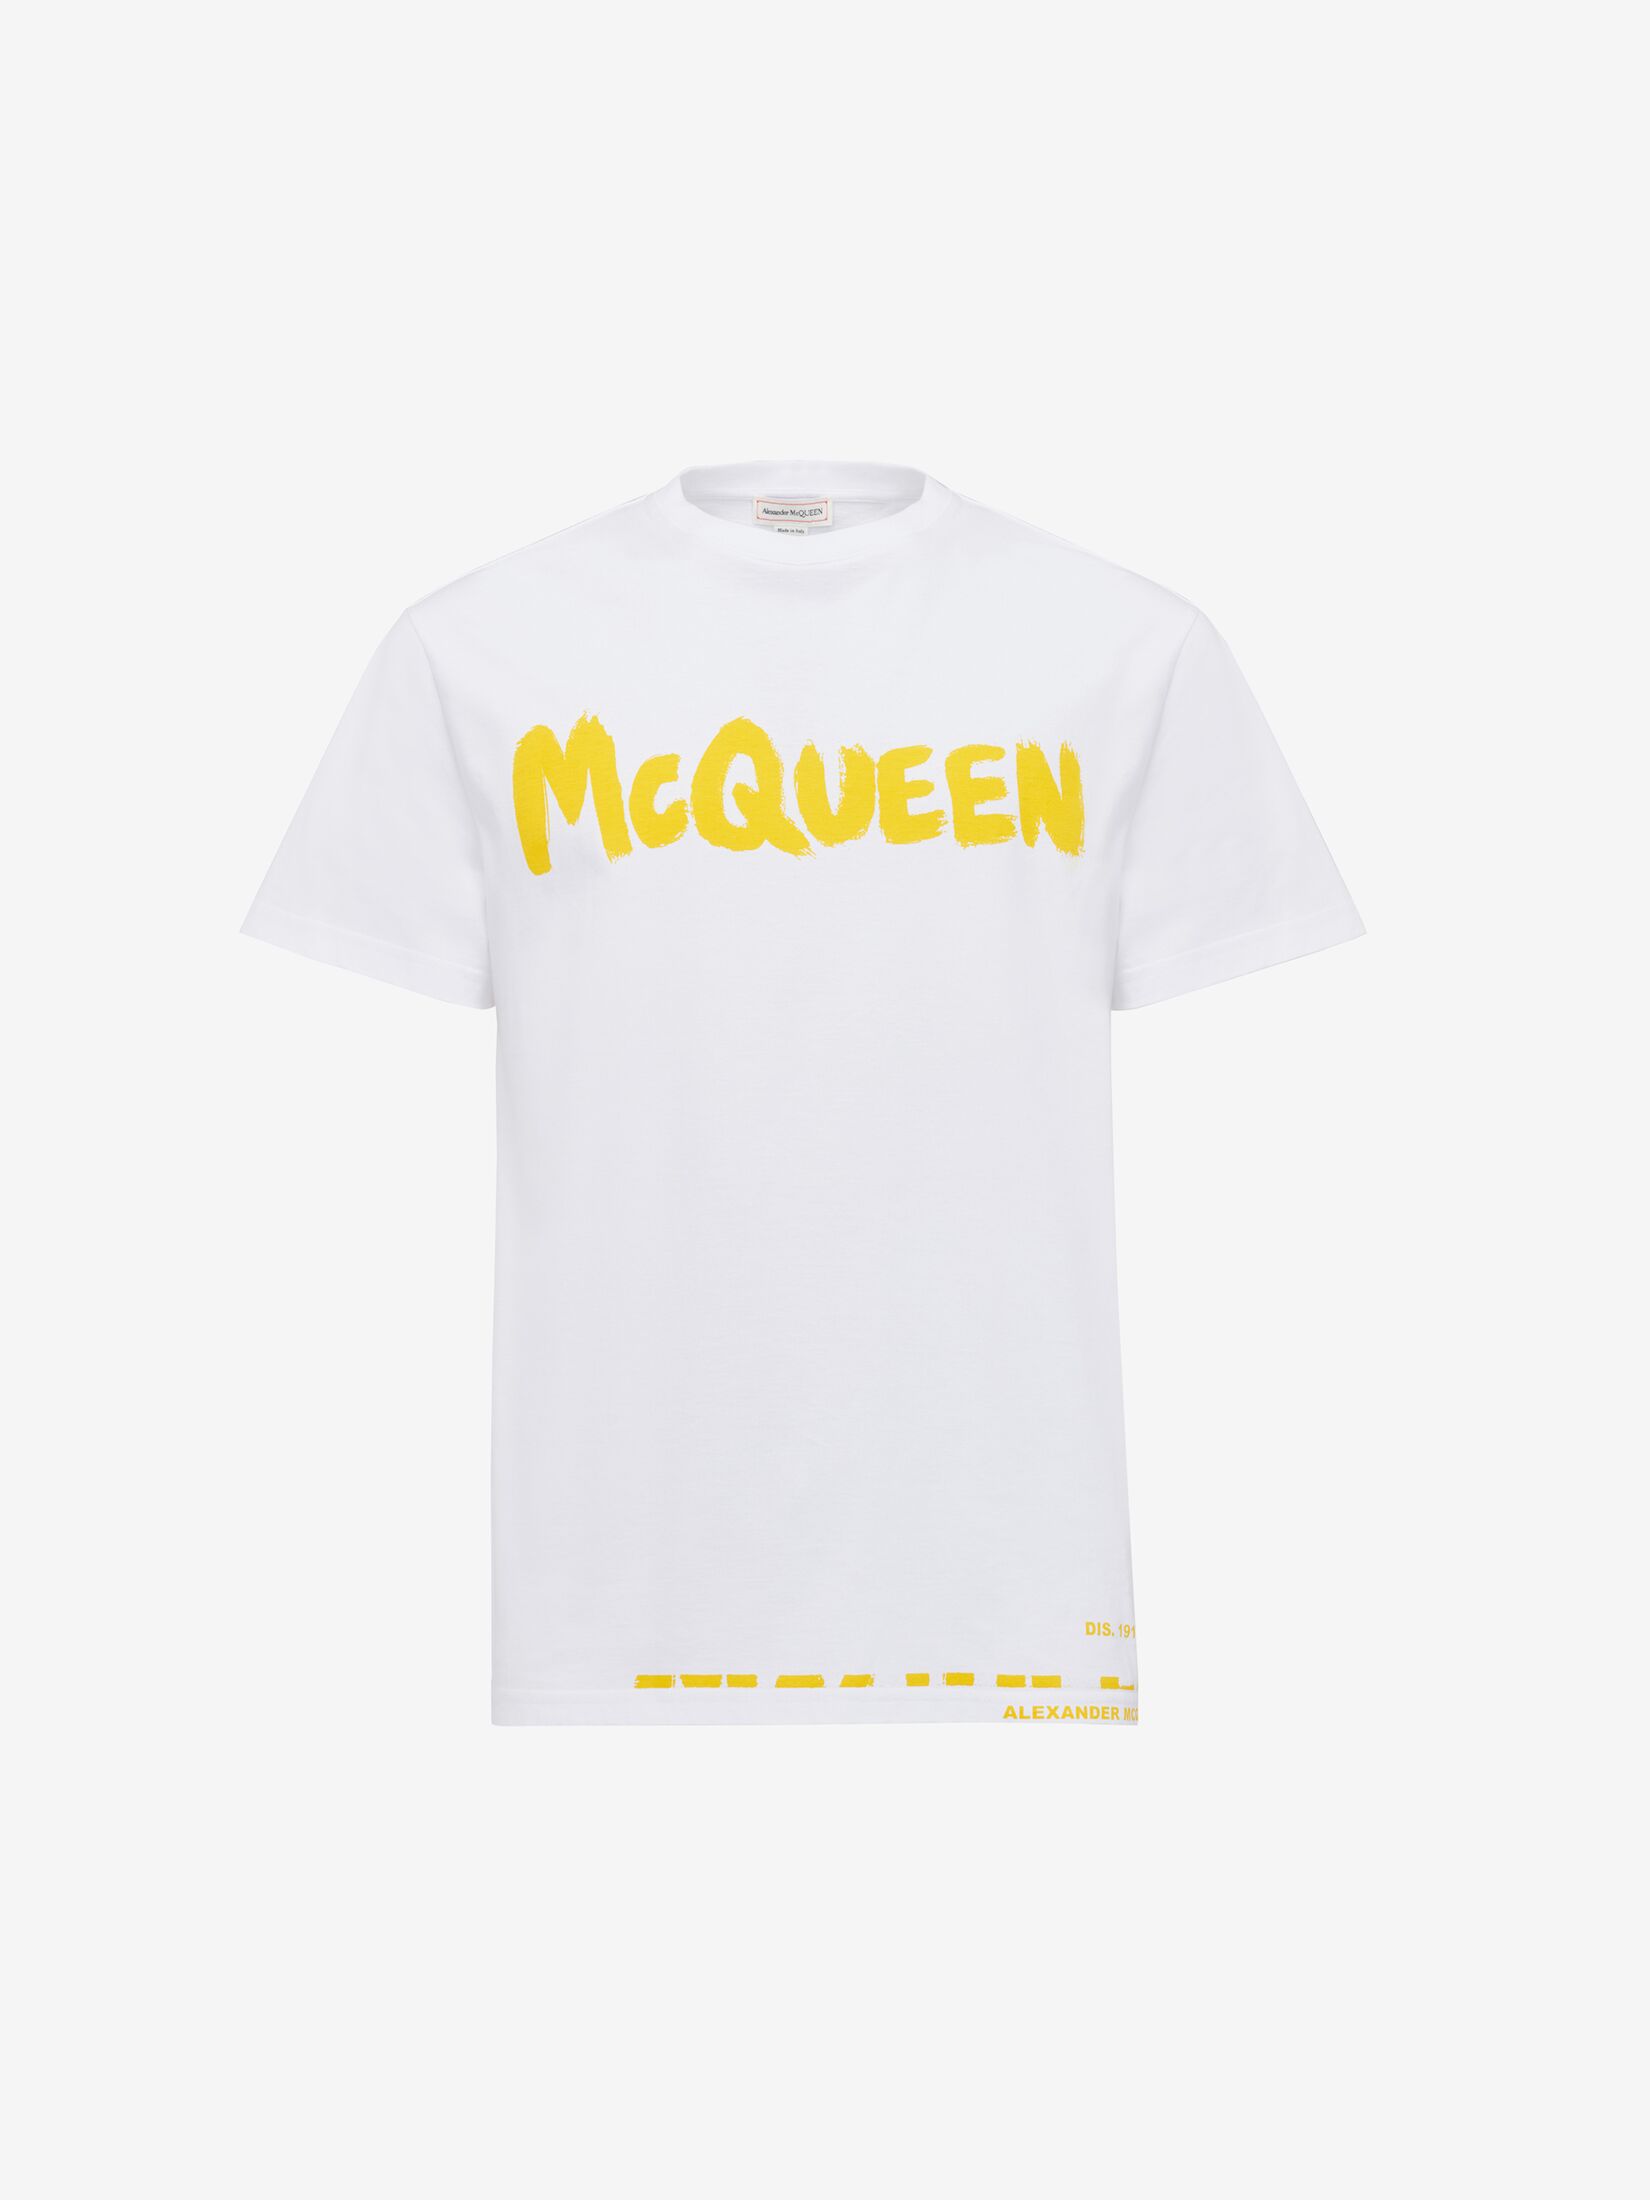 McQueen Graffiti T-shirt in White/Yellow | Alexander McQueen US